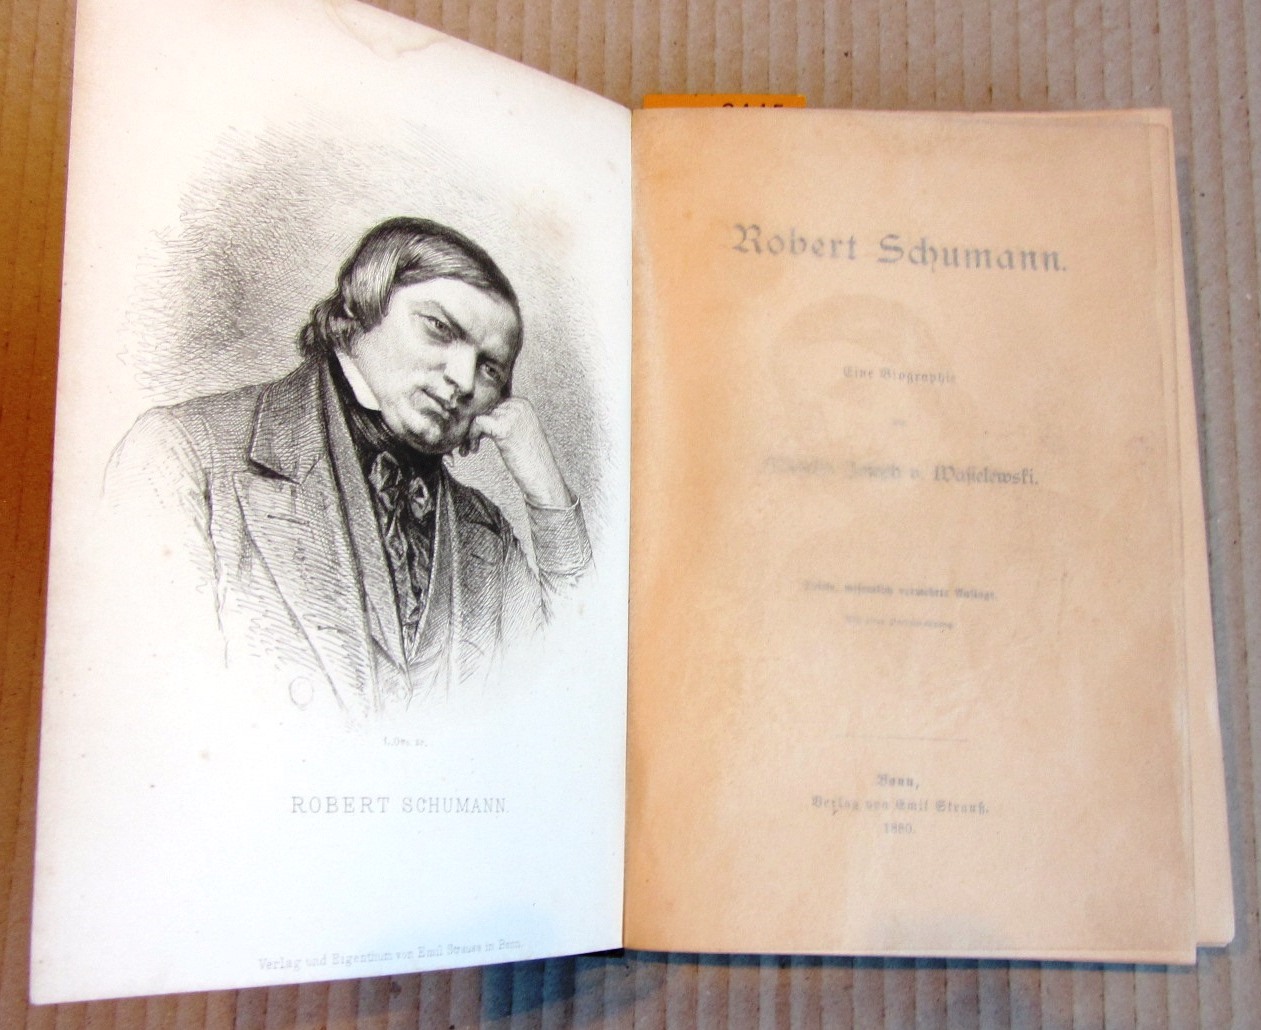 Wasielewski, Wilhelm Joseph v.:  Robert Schumann. Eine Biographie. 